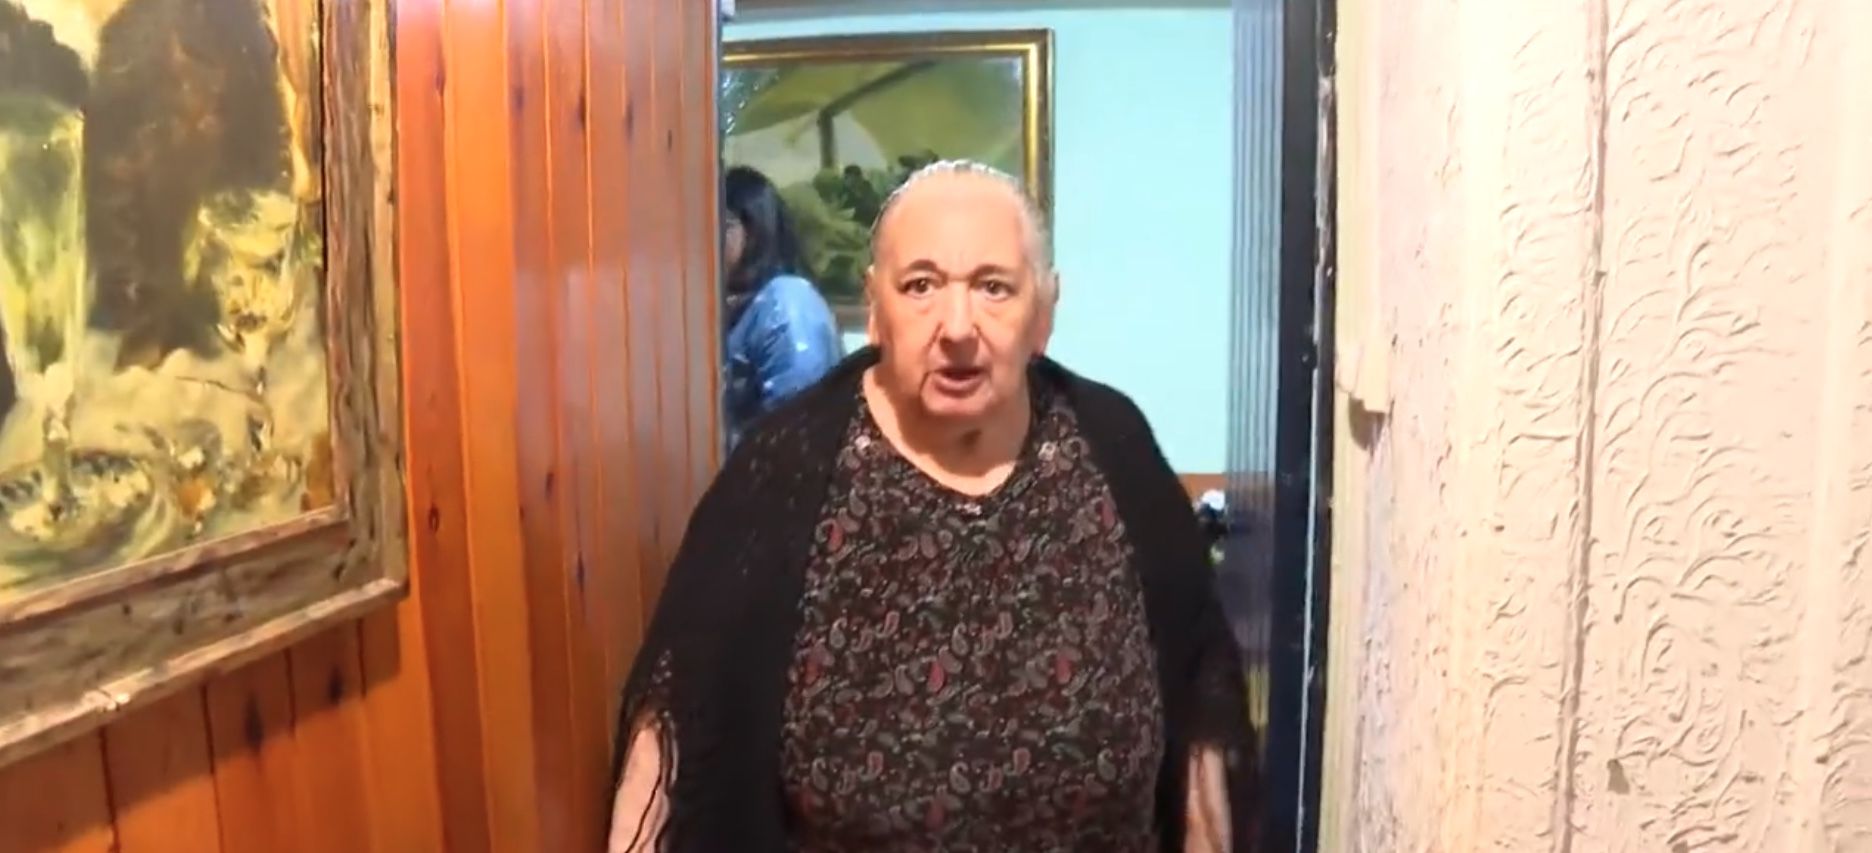 Consiguen detener el desahucio de Blanca, una mujer de 78 años que debía 88 euros